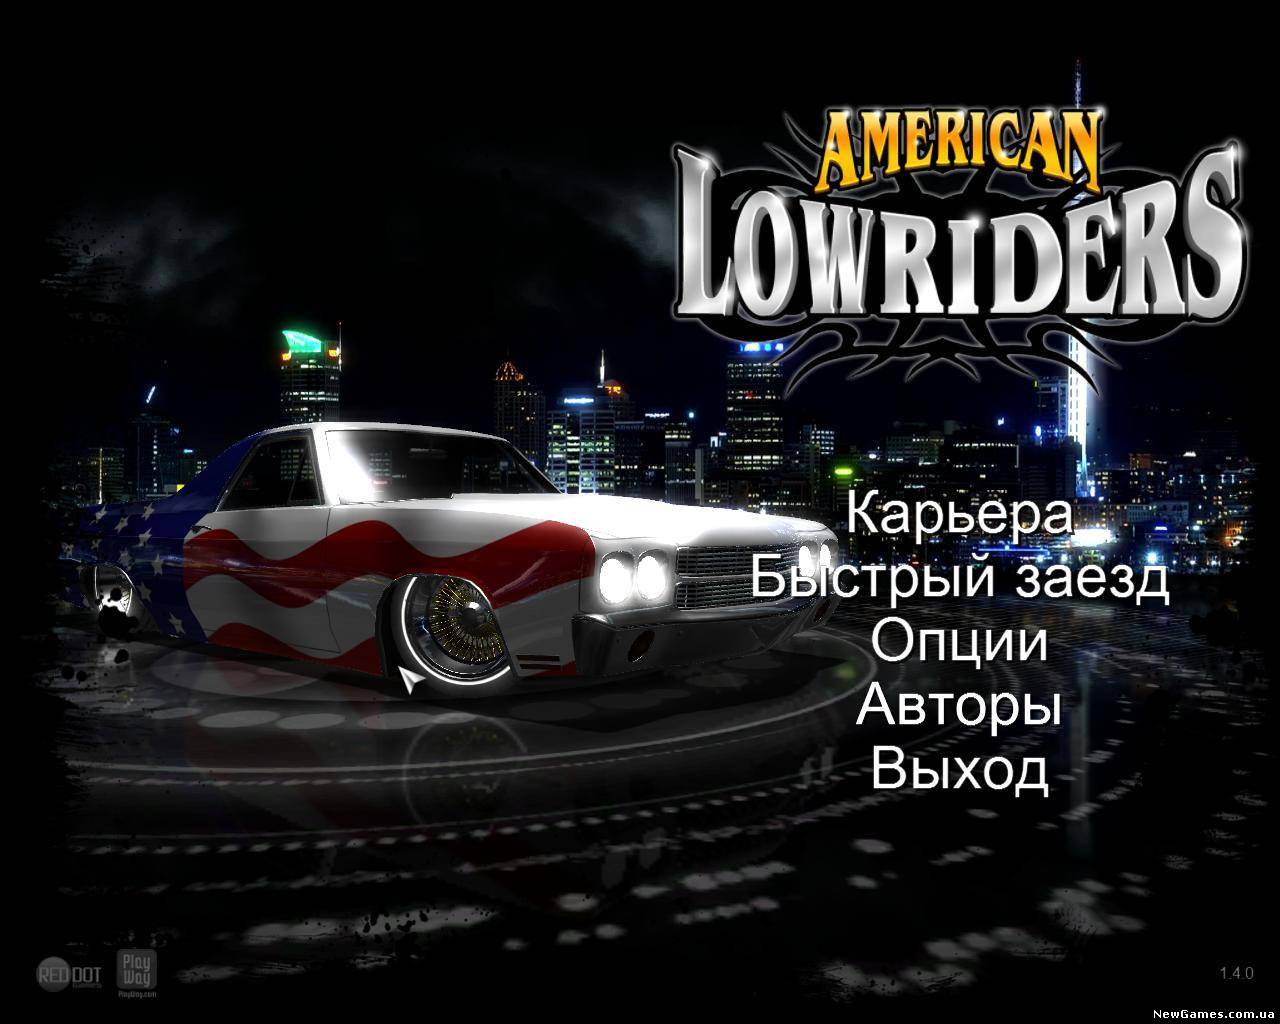 Американский игры машины. Lowrider гонки. American Lowriders. Lowrider 2012. American Lowriders gif.